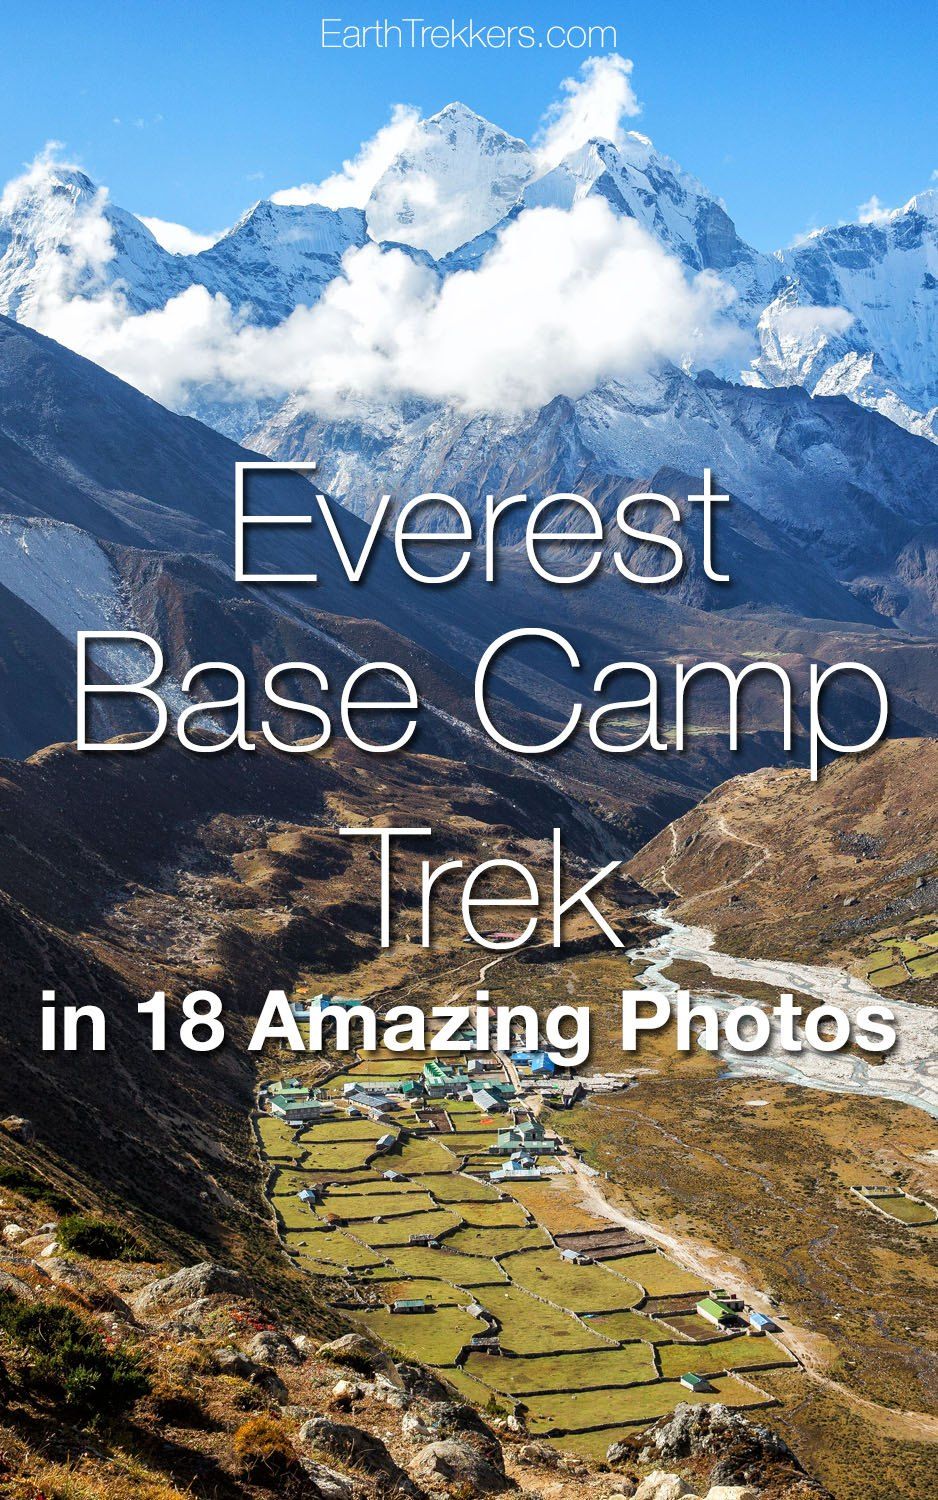 Everest base camp trek in photos